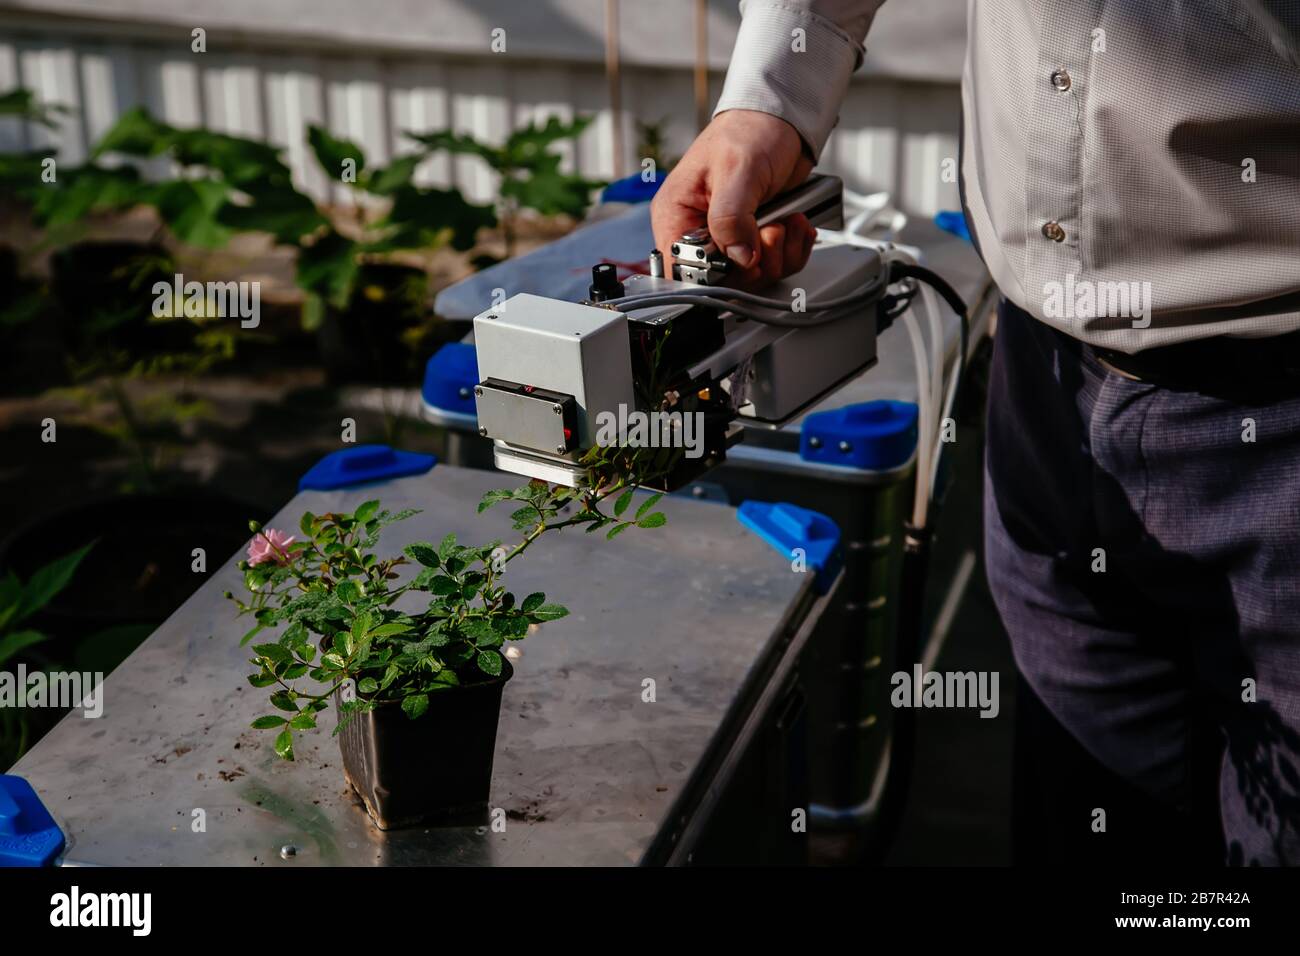 Le scientifique mesure la photosynthèse végétale de la jeune rose Banque D'Images